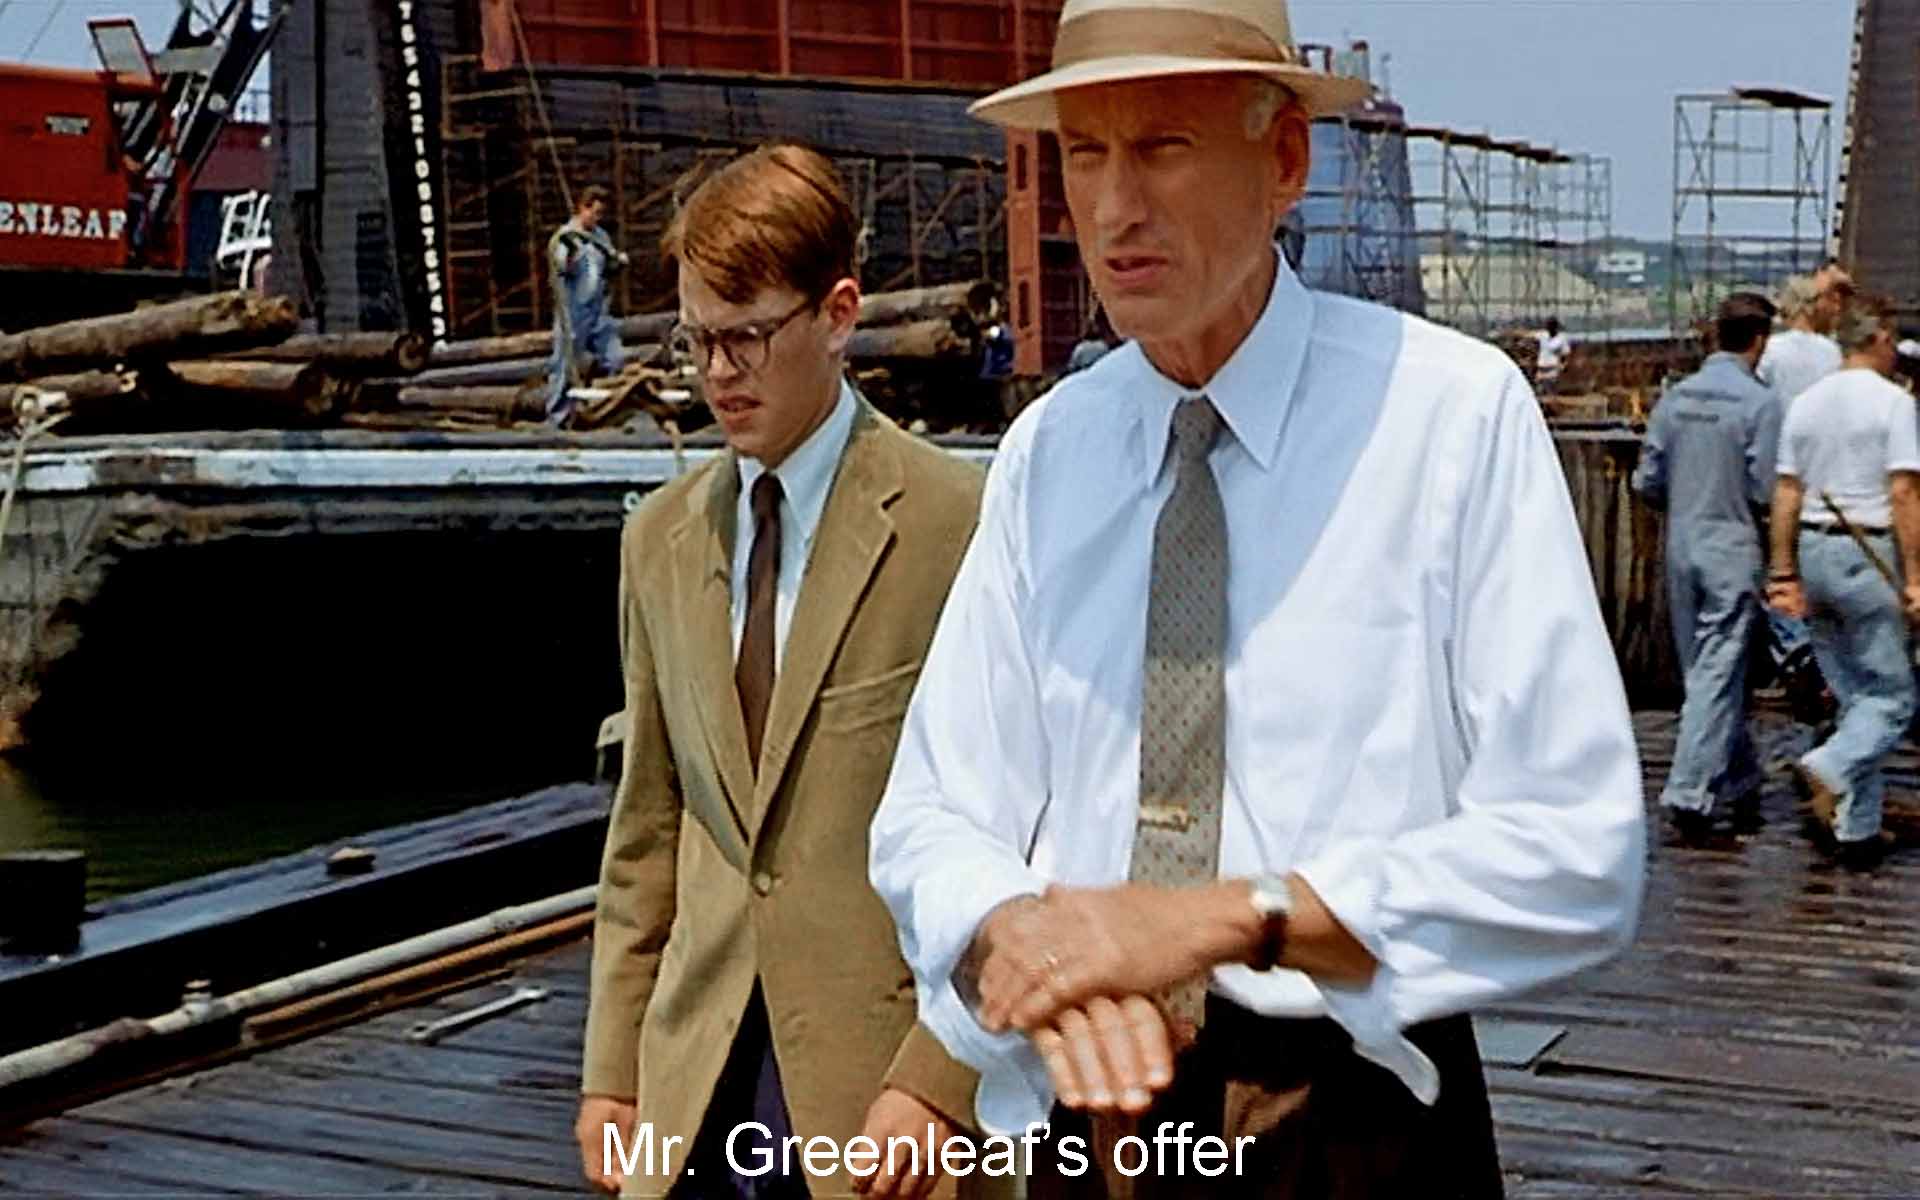 Mr. Greenleaf's offer